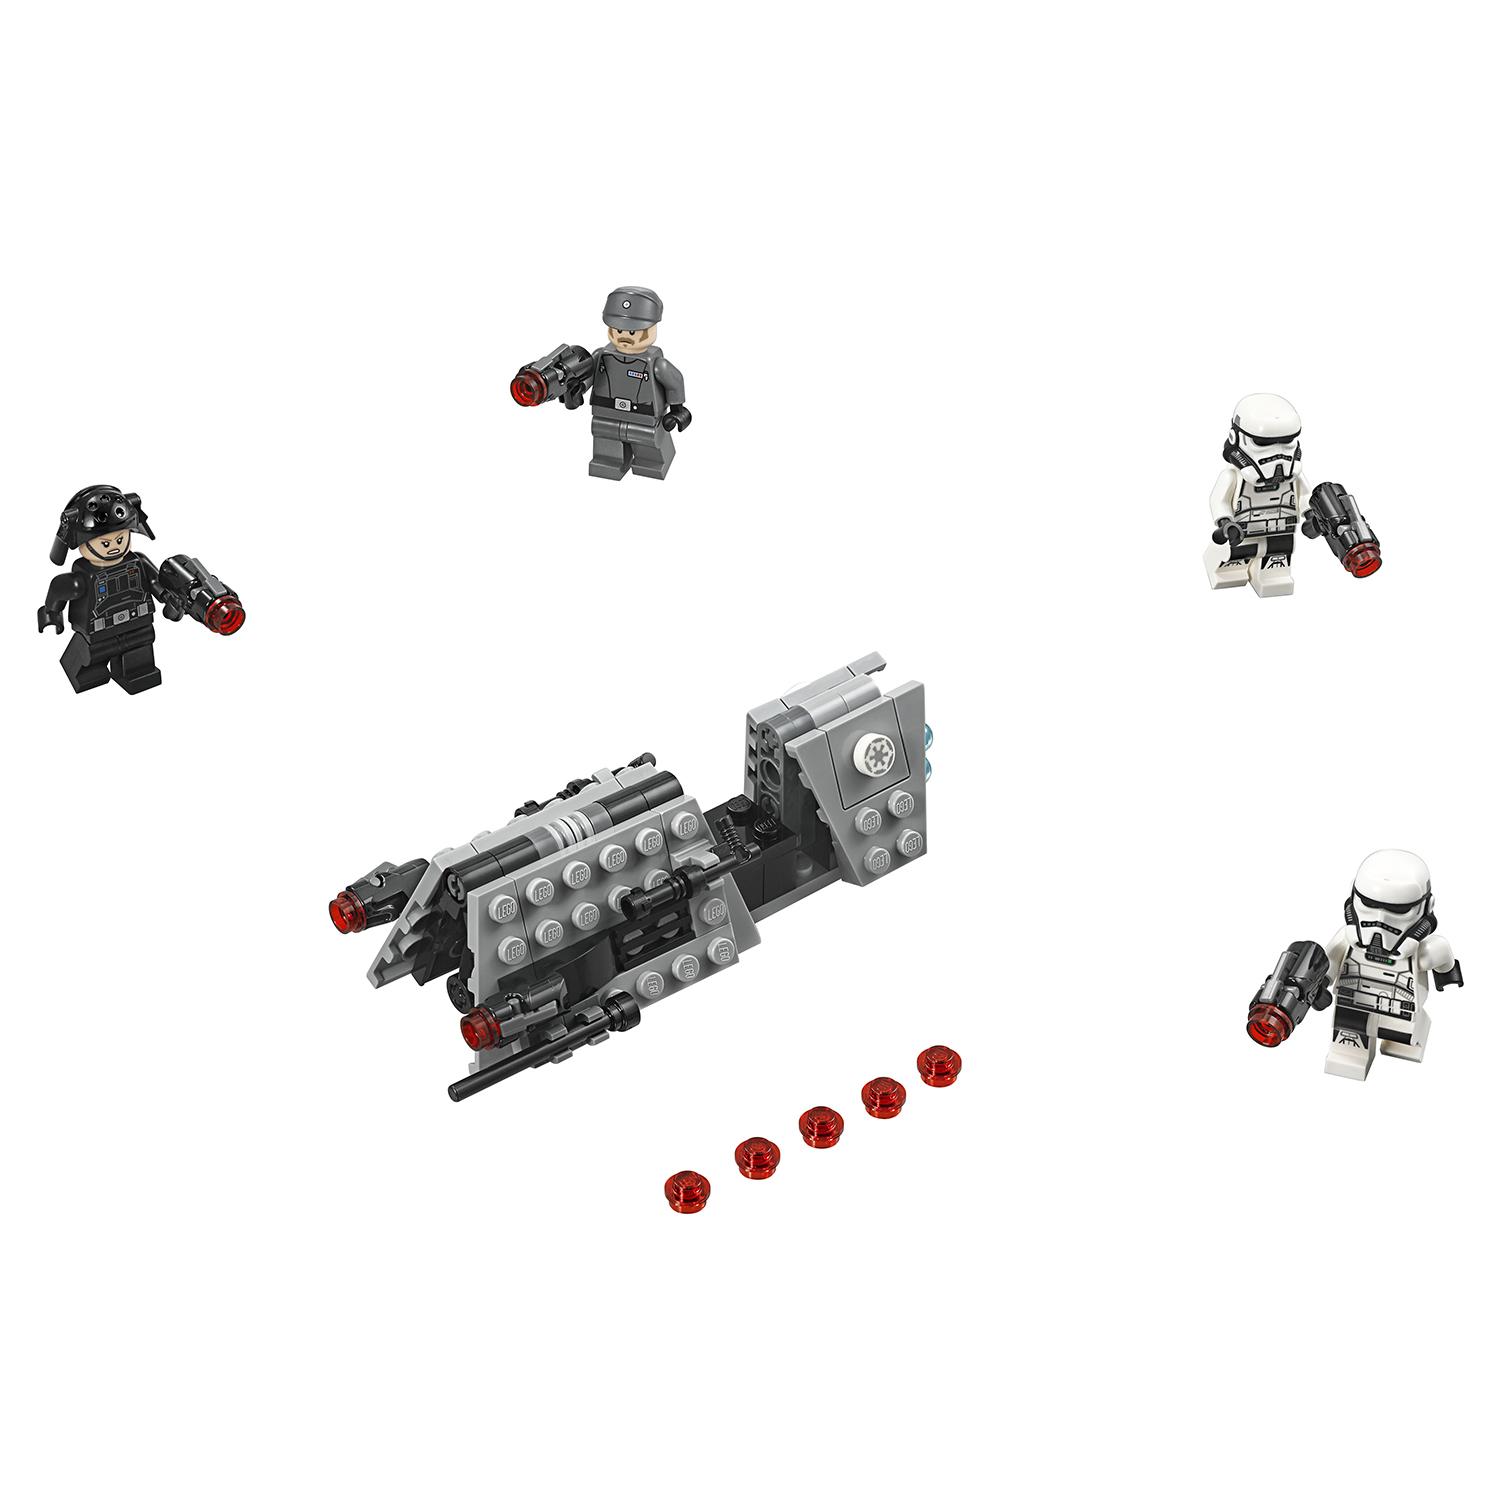 Lego Star Wars 75207 Боевой набор имперского патруля